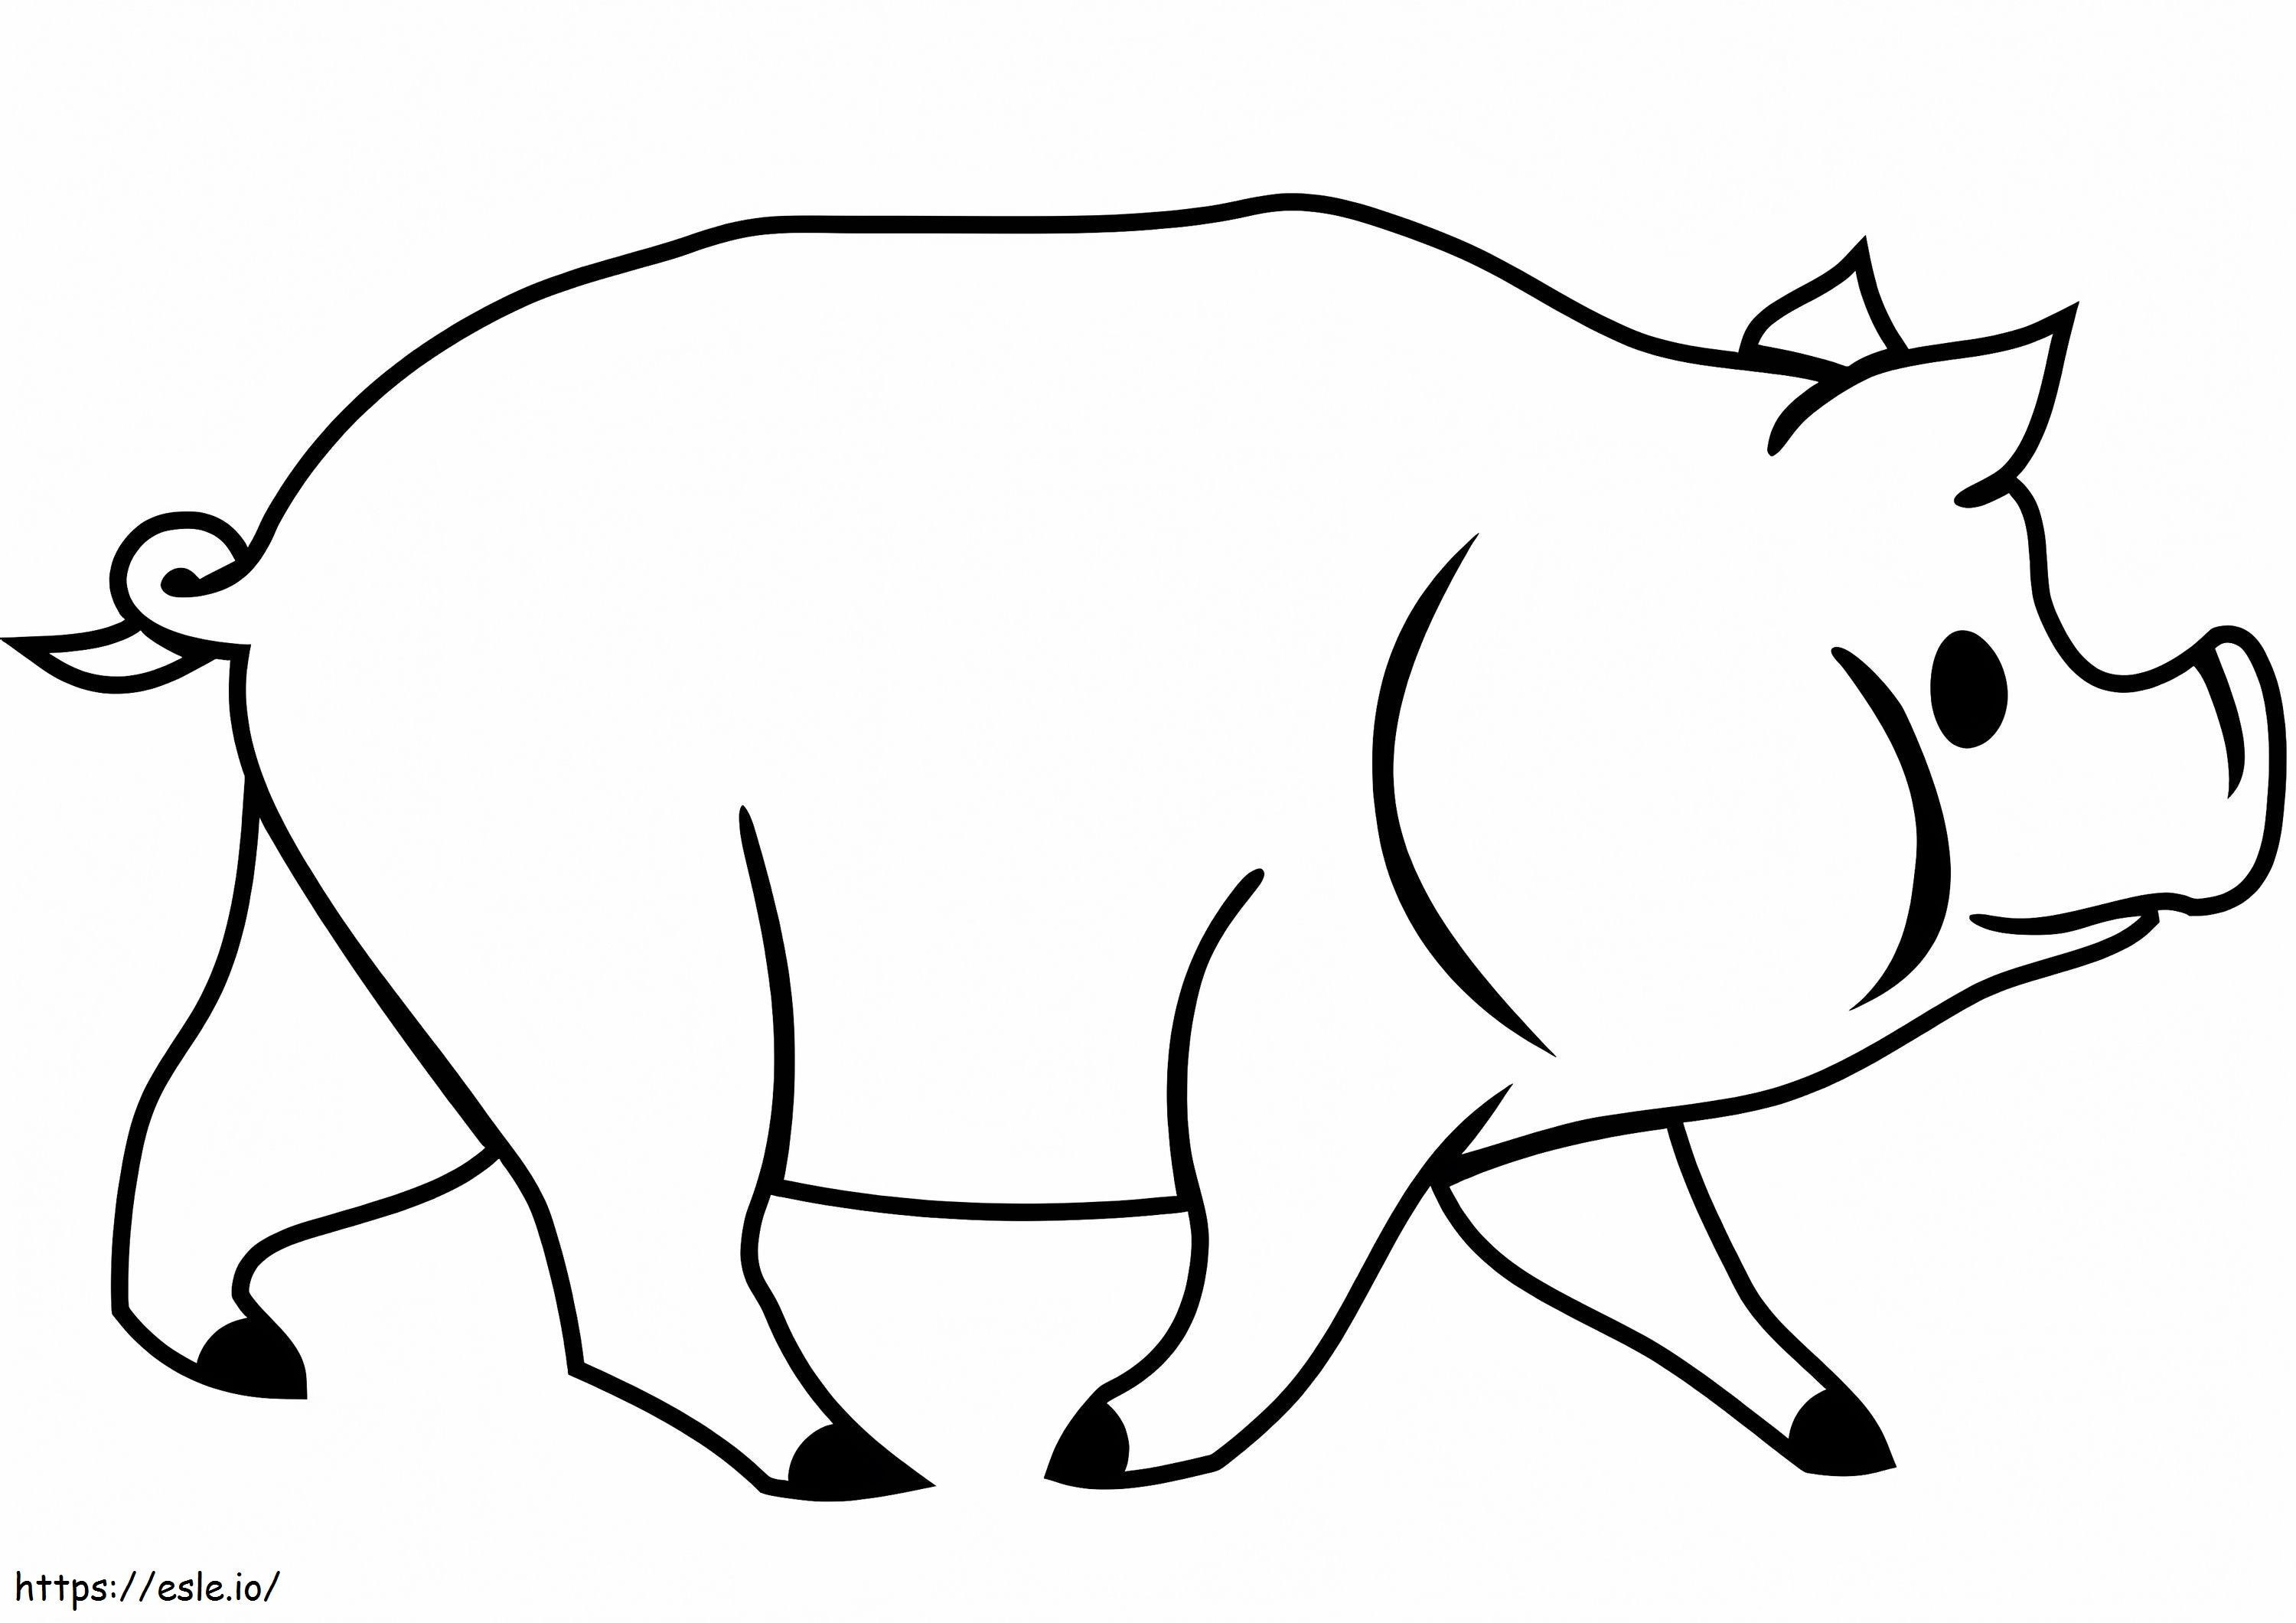 Coloriage Cochon 4 à imprimer dessin